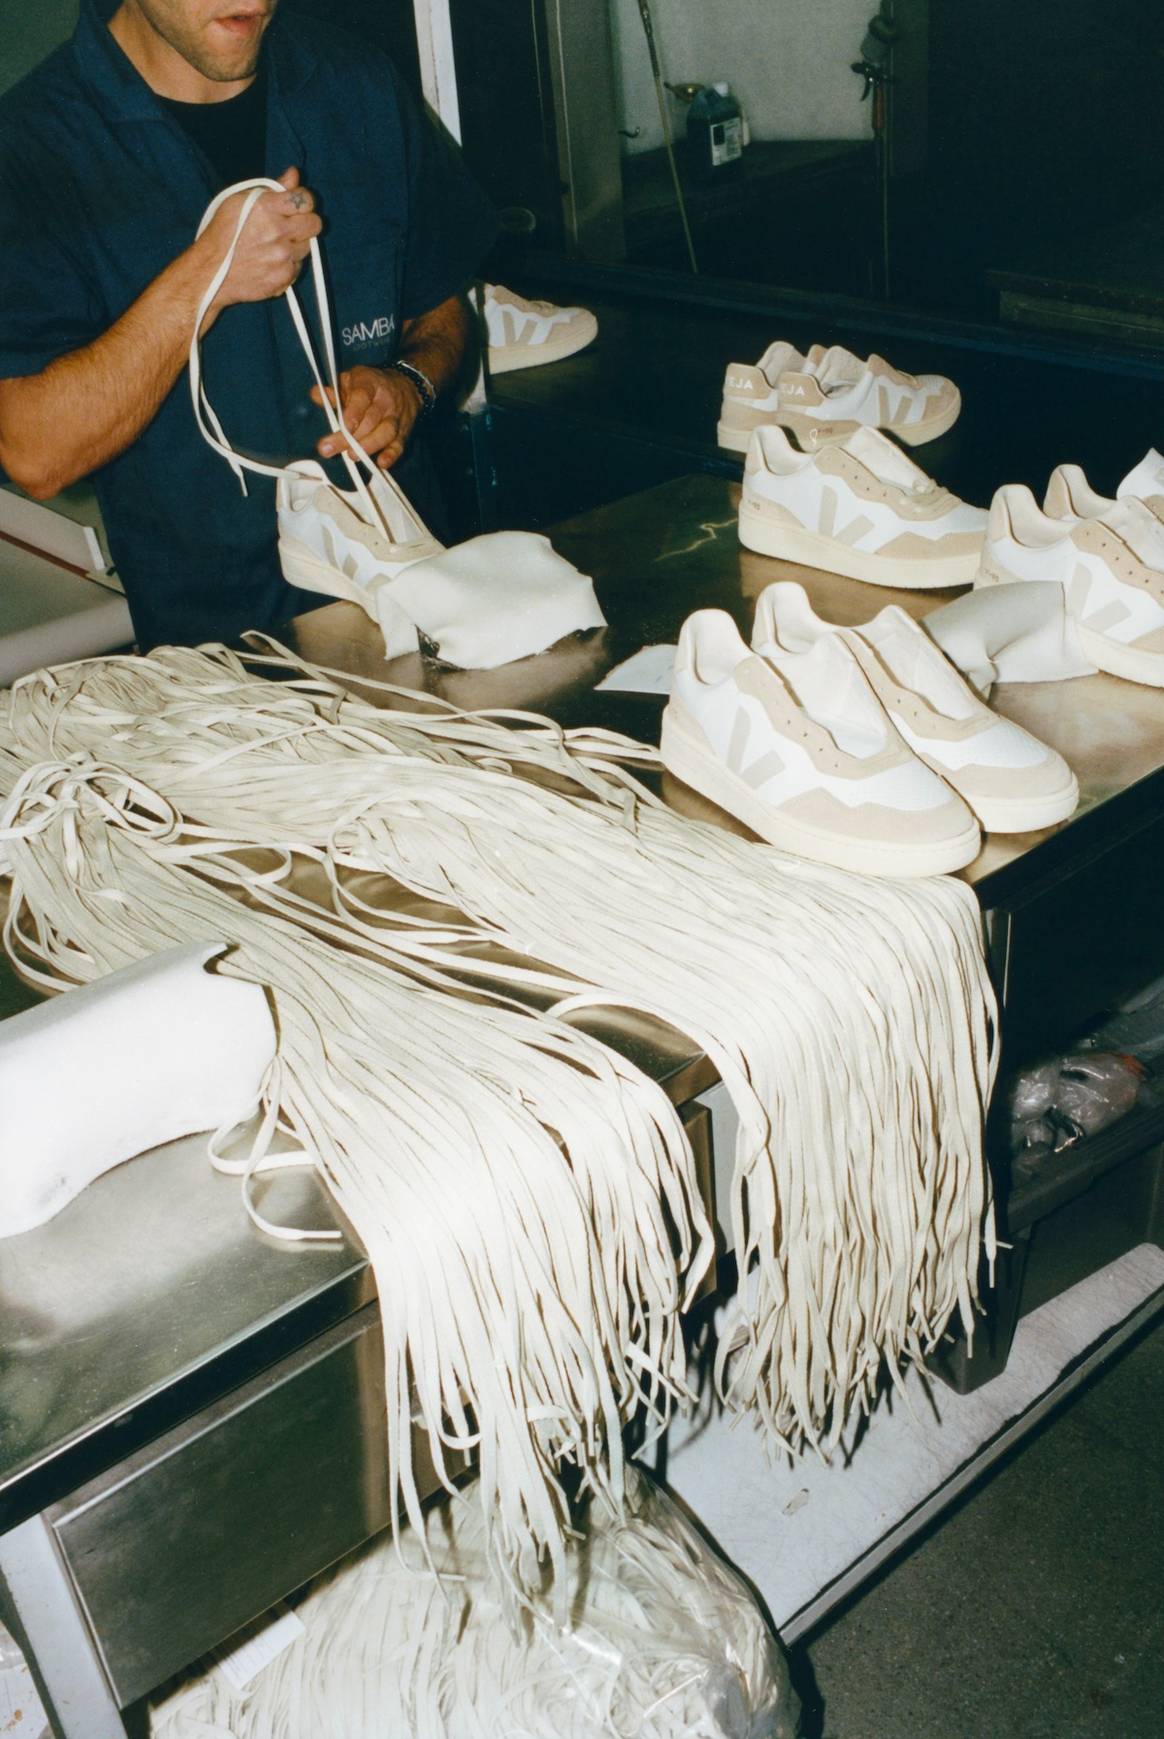 De productie van Veja-schoenen in Portugal